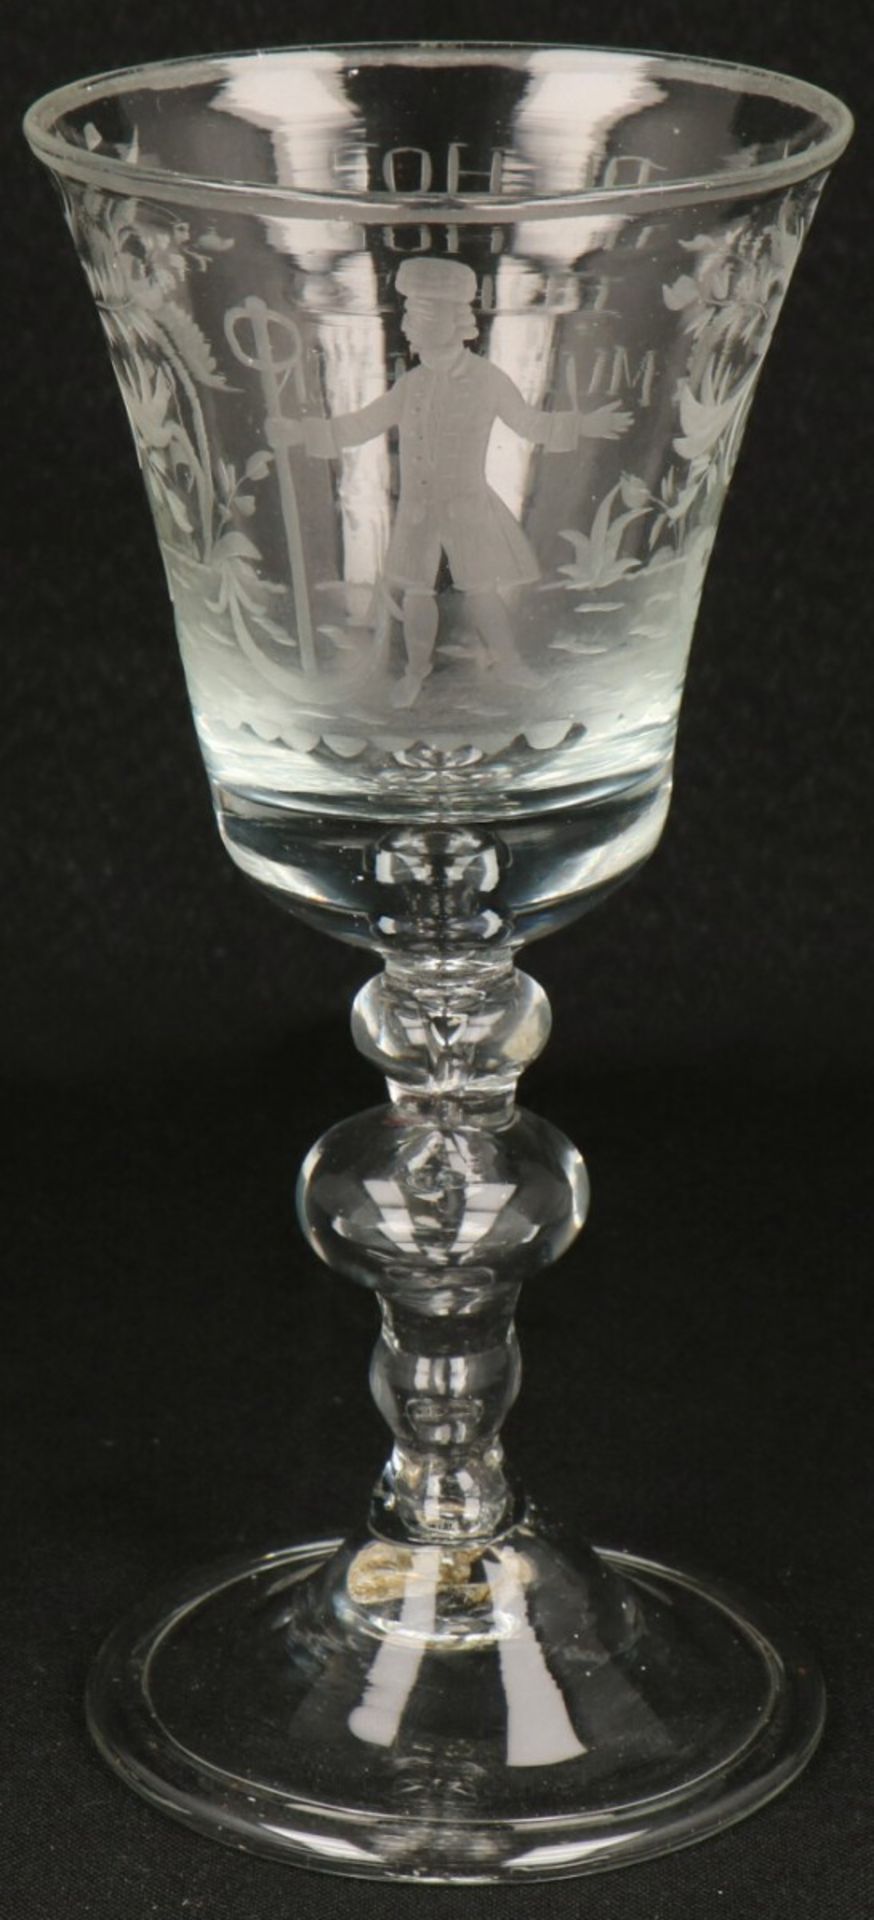 A commemorative glass 'de hop doet my lachen' 19th century. - Image 3 of 3